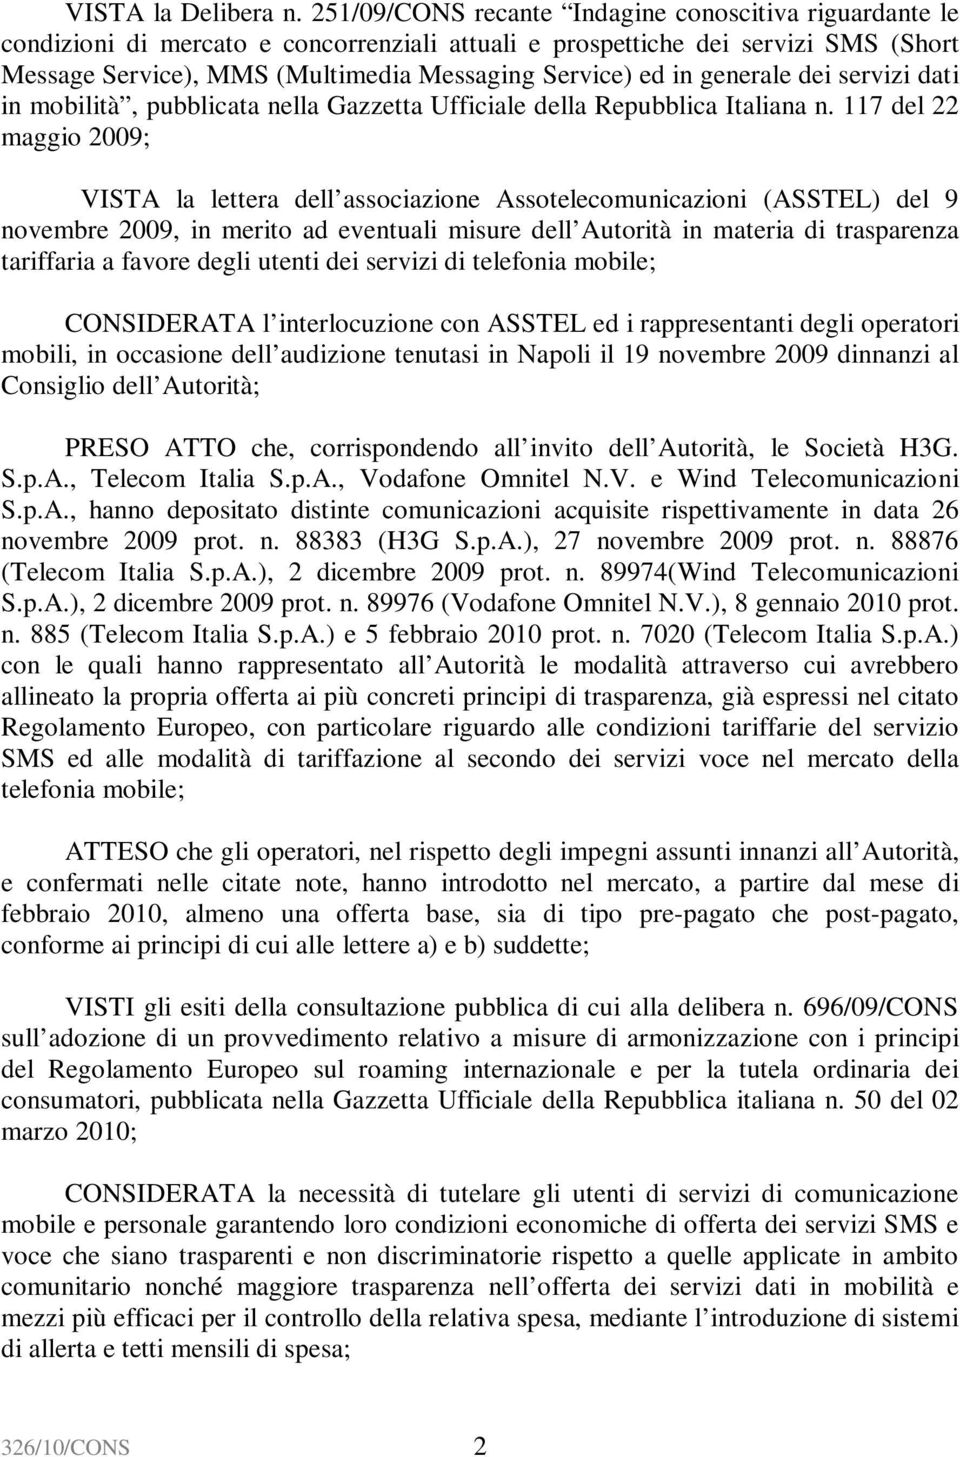 generale dei servizi dati in mobilità, pubblicata nella Gazzetta Ufficiale della Repubblica Italiana n.